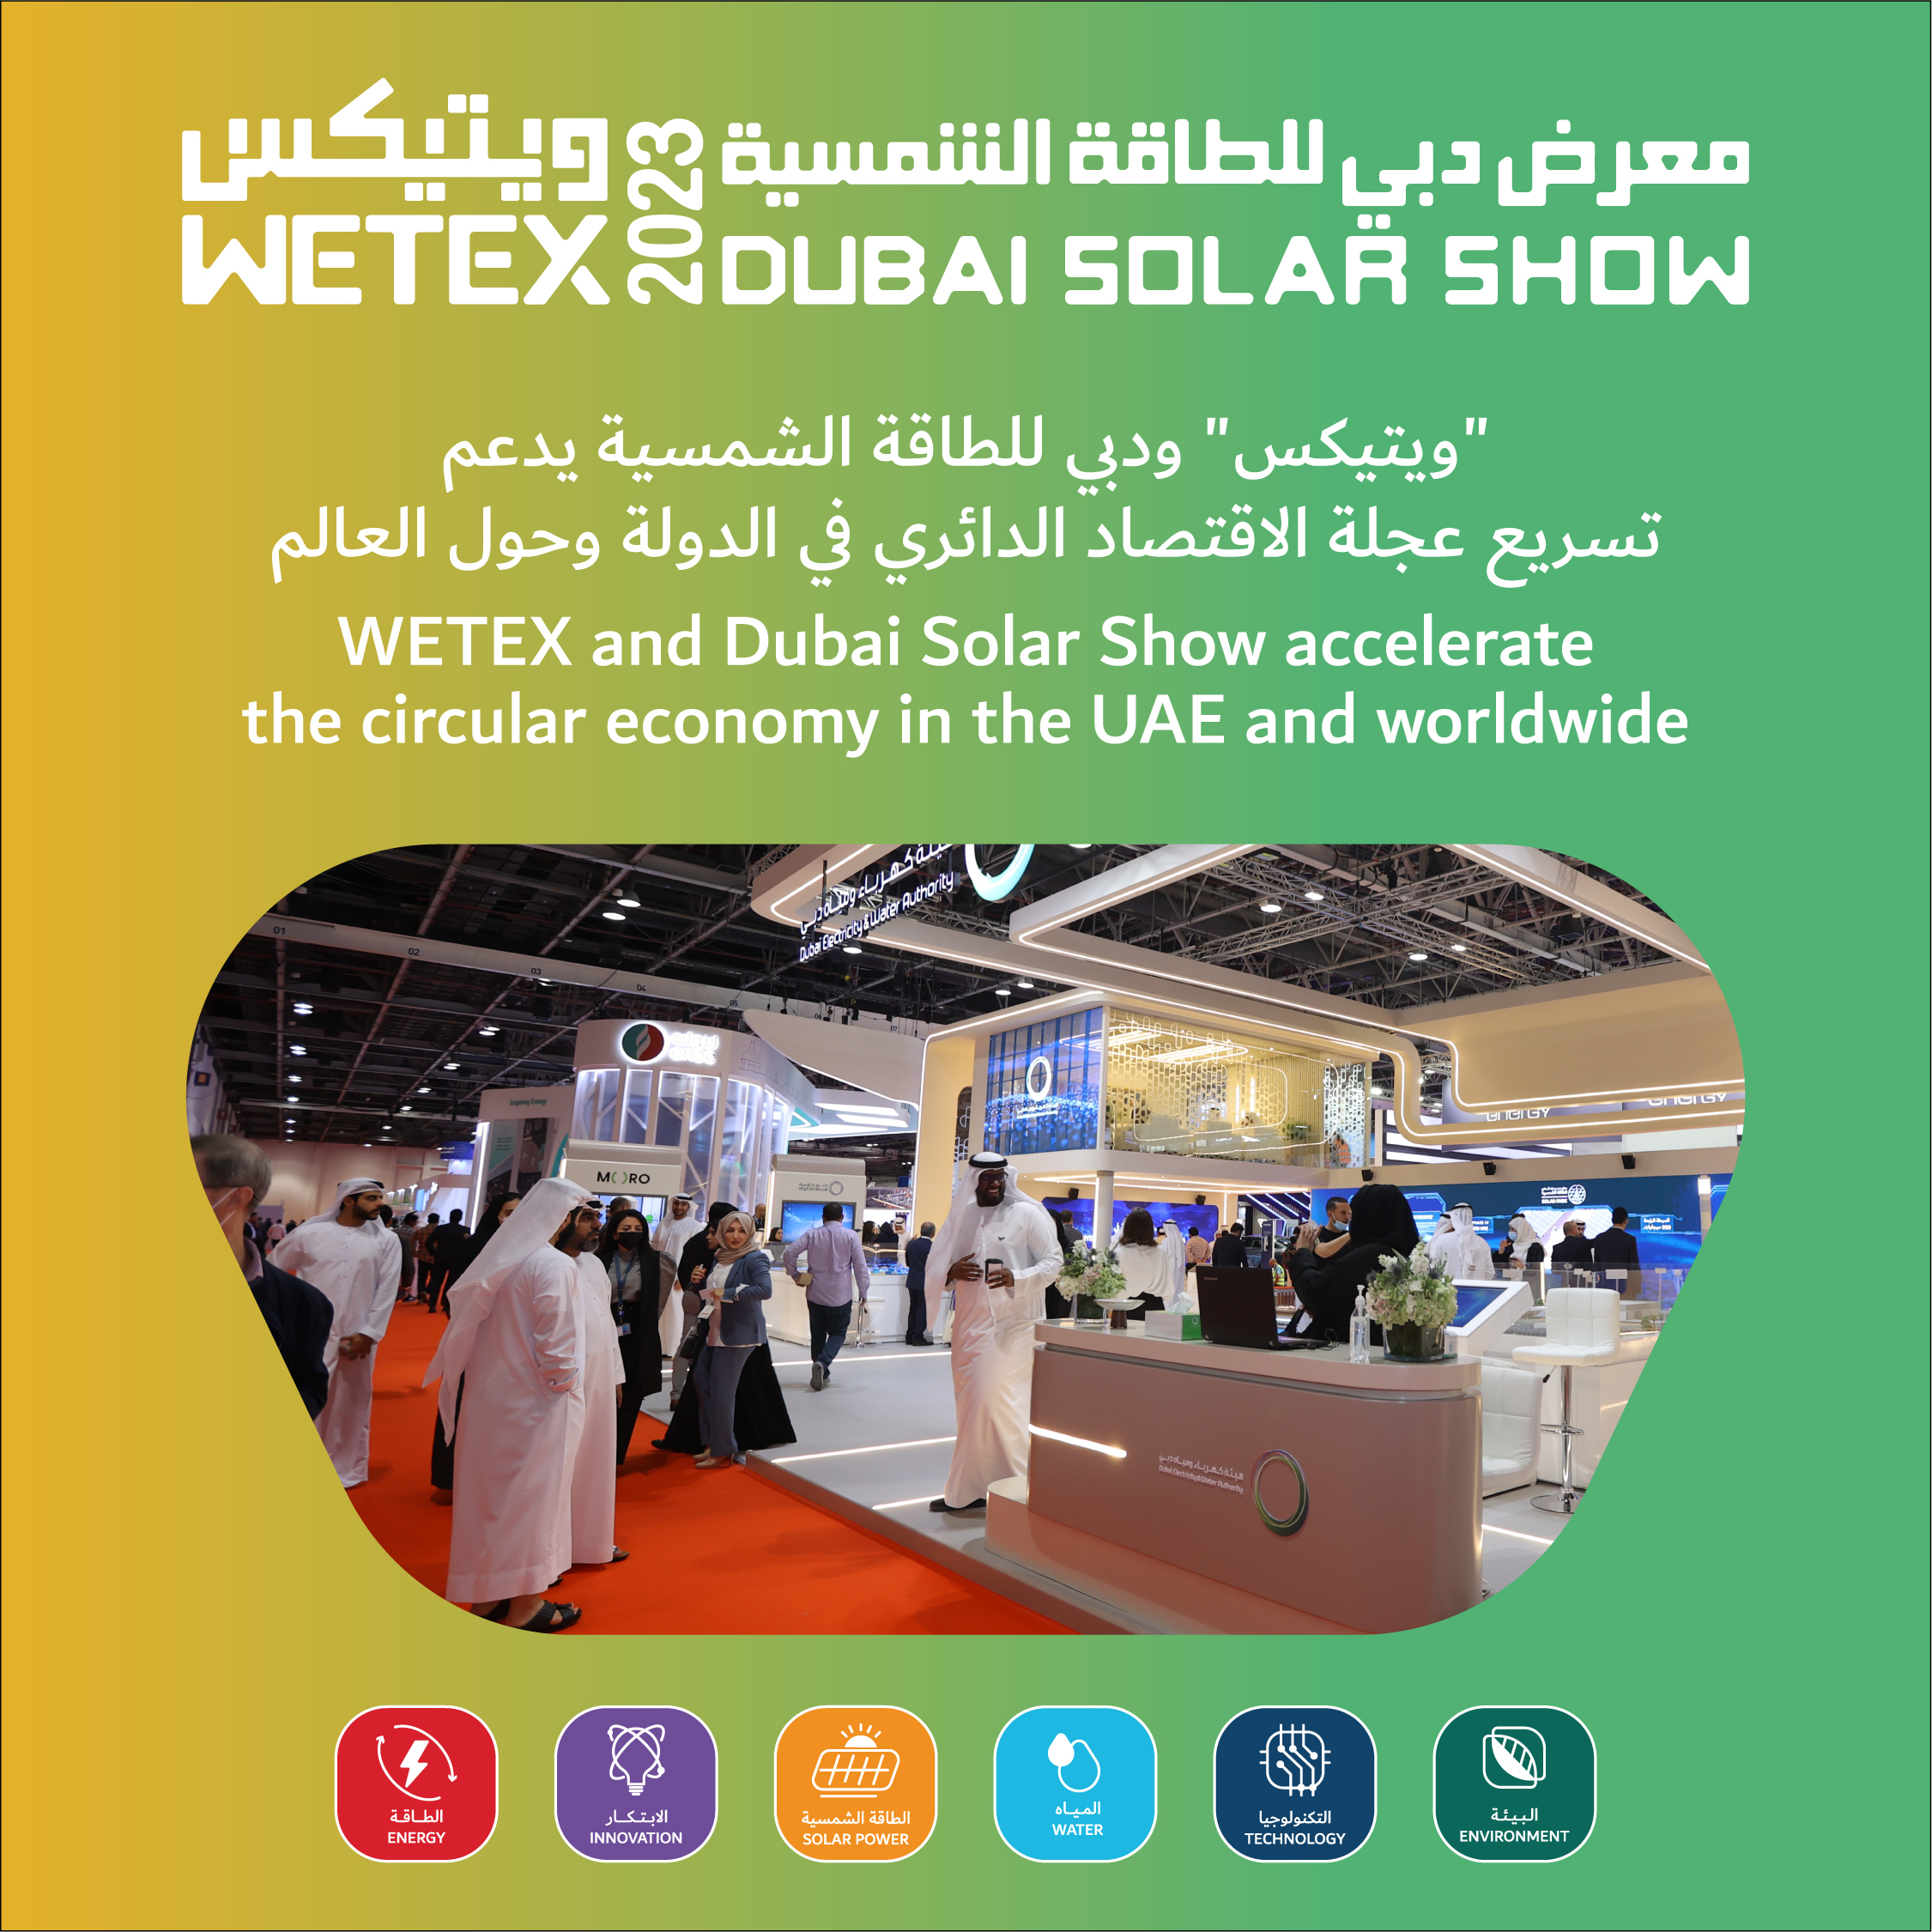 ويعزز معرض ويتيكس ودبي للطاقة الشمسية تبني الاقتصاد الدائري في دولة الإمارات العربية المتحدة ومختلف أنحاء العالم